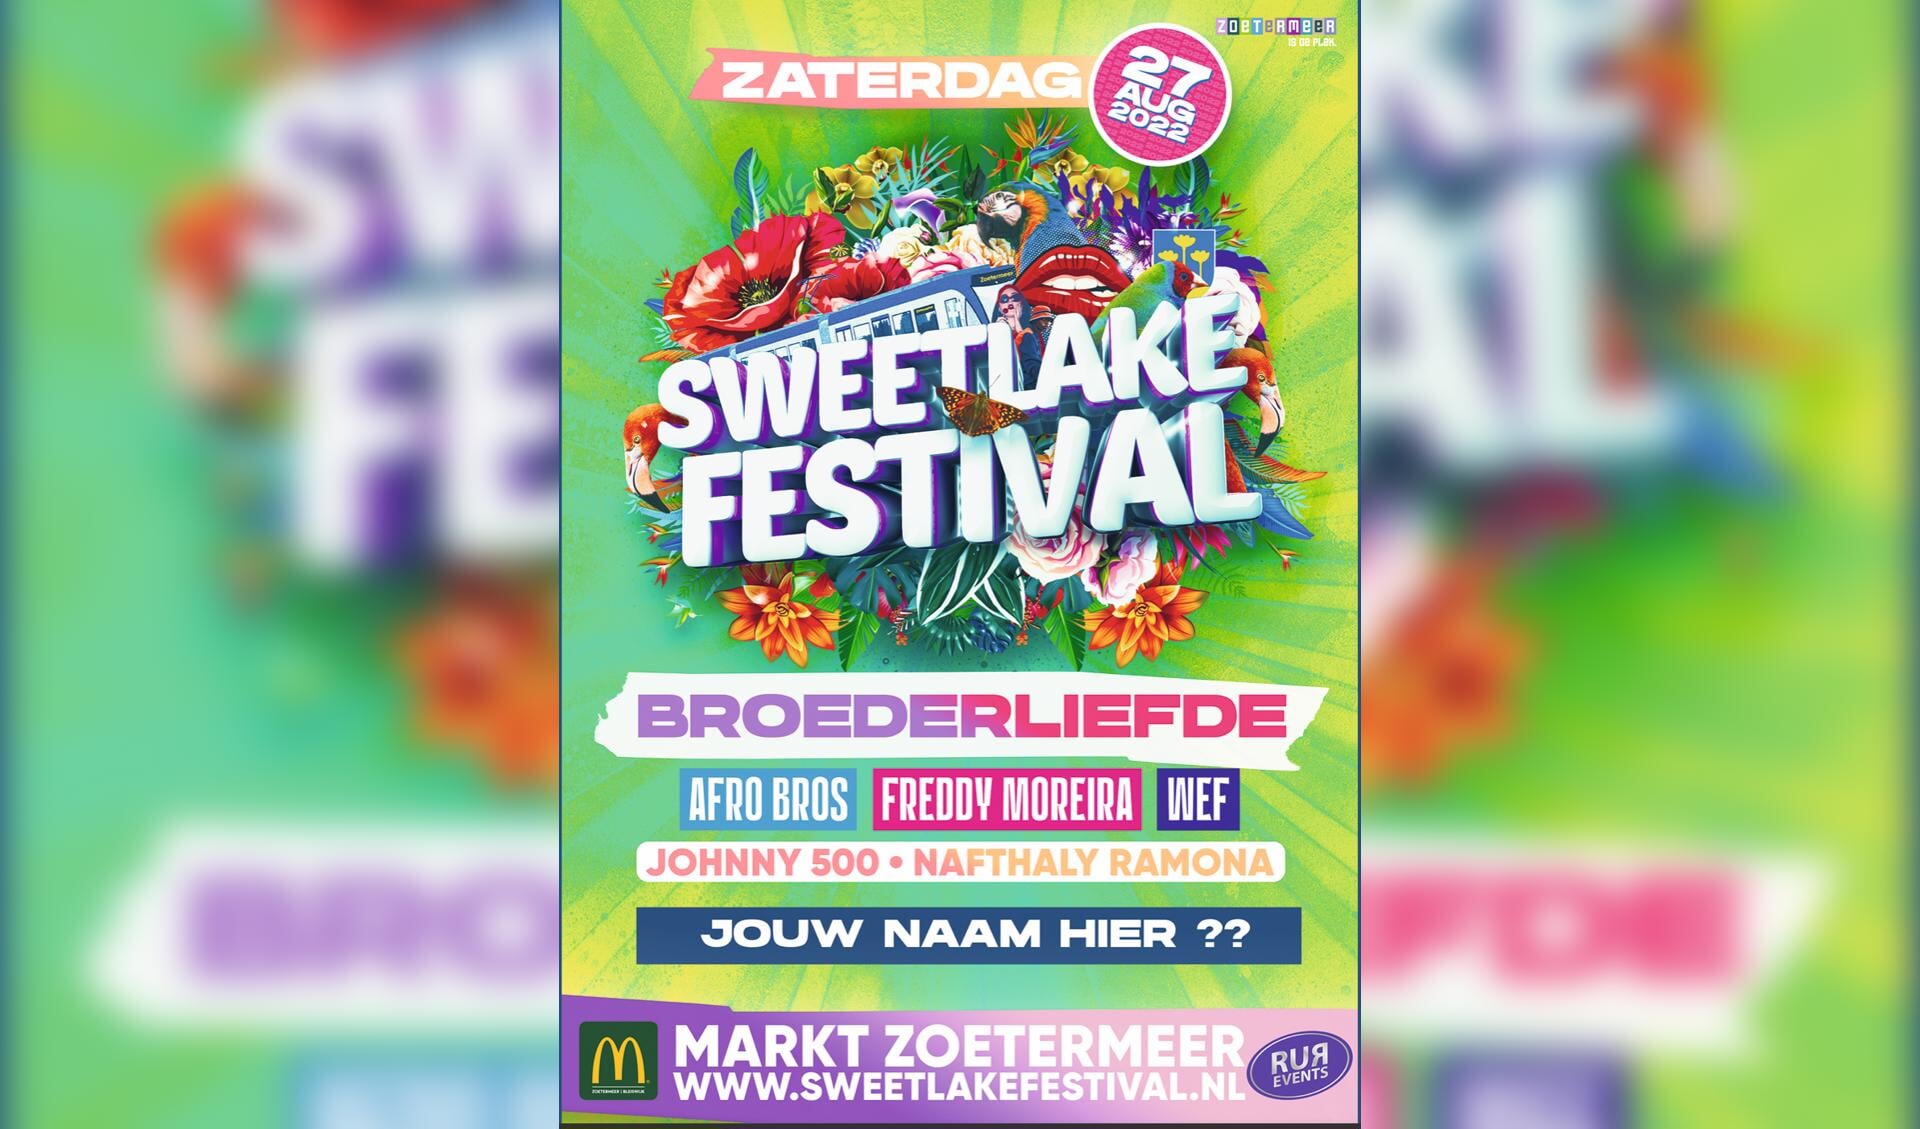 Sweetlakefestival